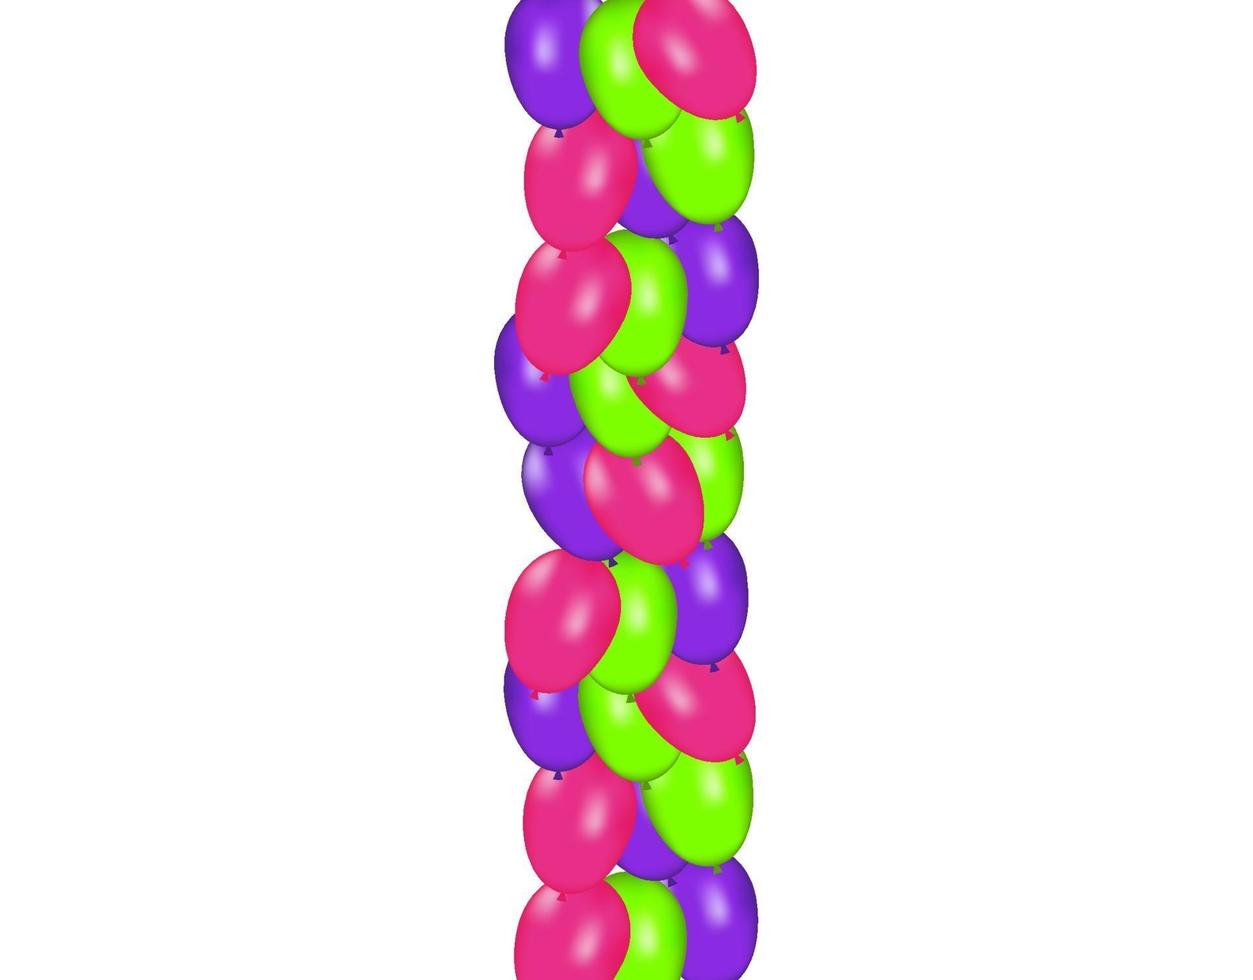 composizione in colori di palloncini realistici vettoriali isolati su sfondo bianco. palloncini isolati. per biglietti di auguri di compleanno o altri disegni